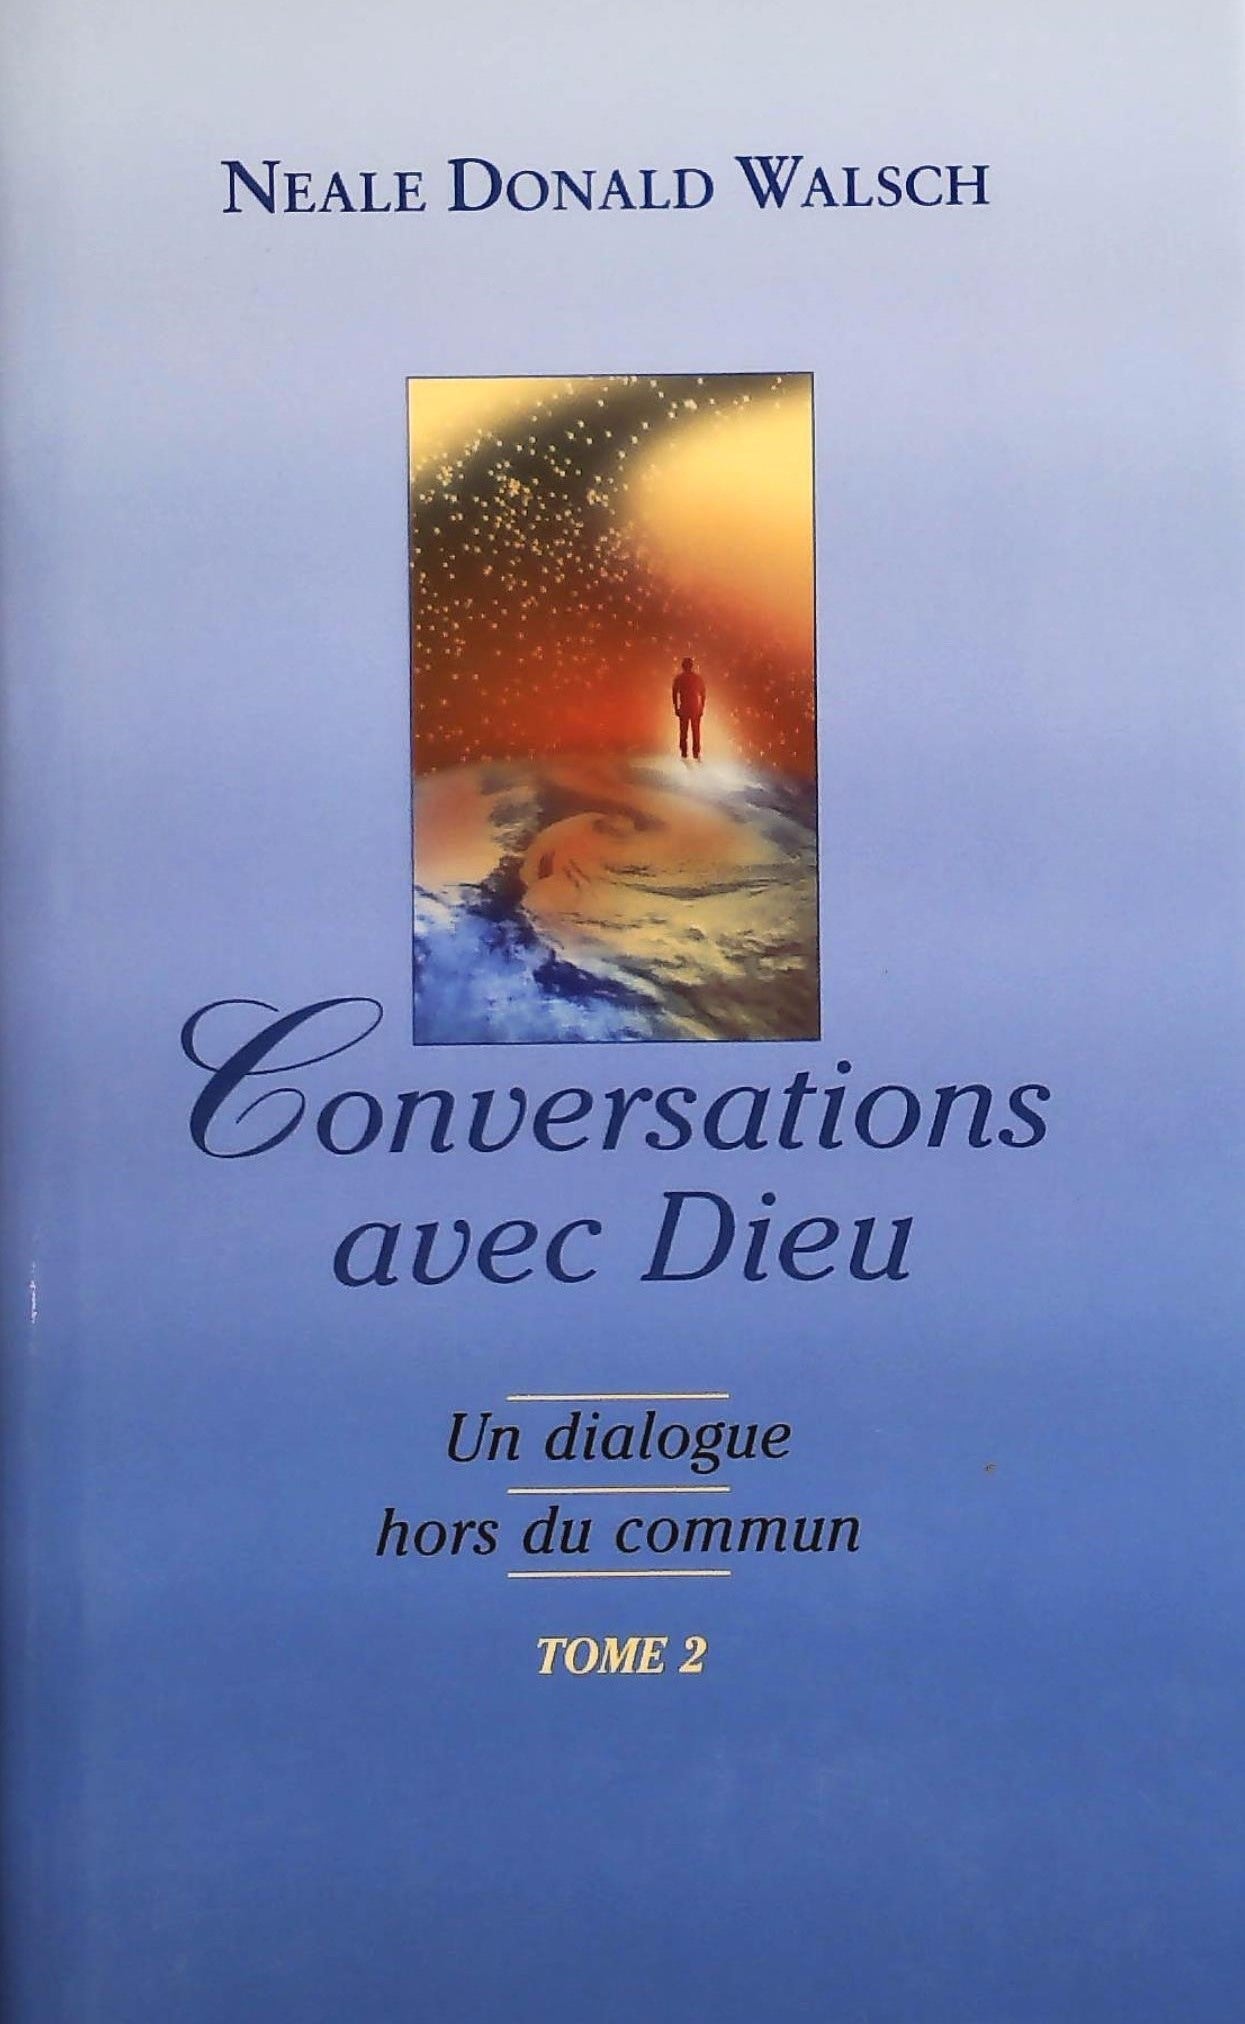 Livre ISBN 2894305745 Conversations avec Dieu # 2 : Un dialogue hors du commun (Neale Donald Walsch)